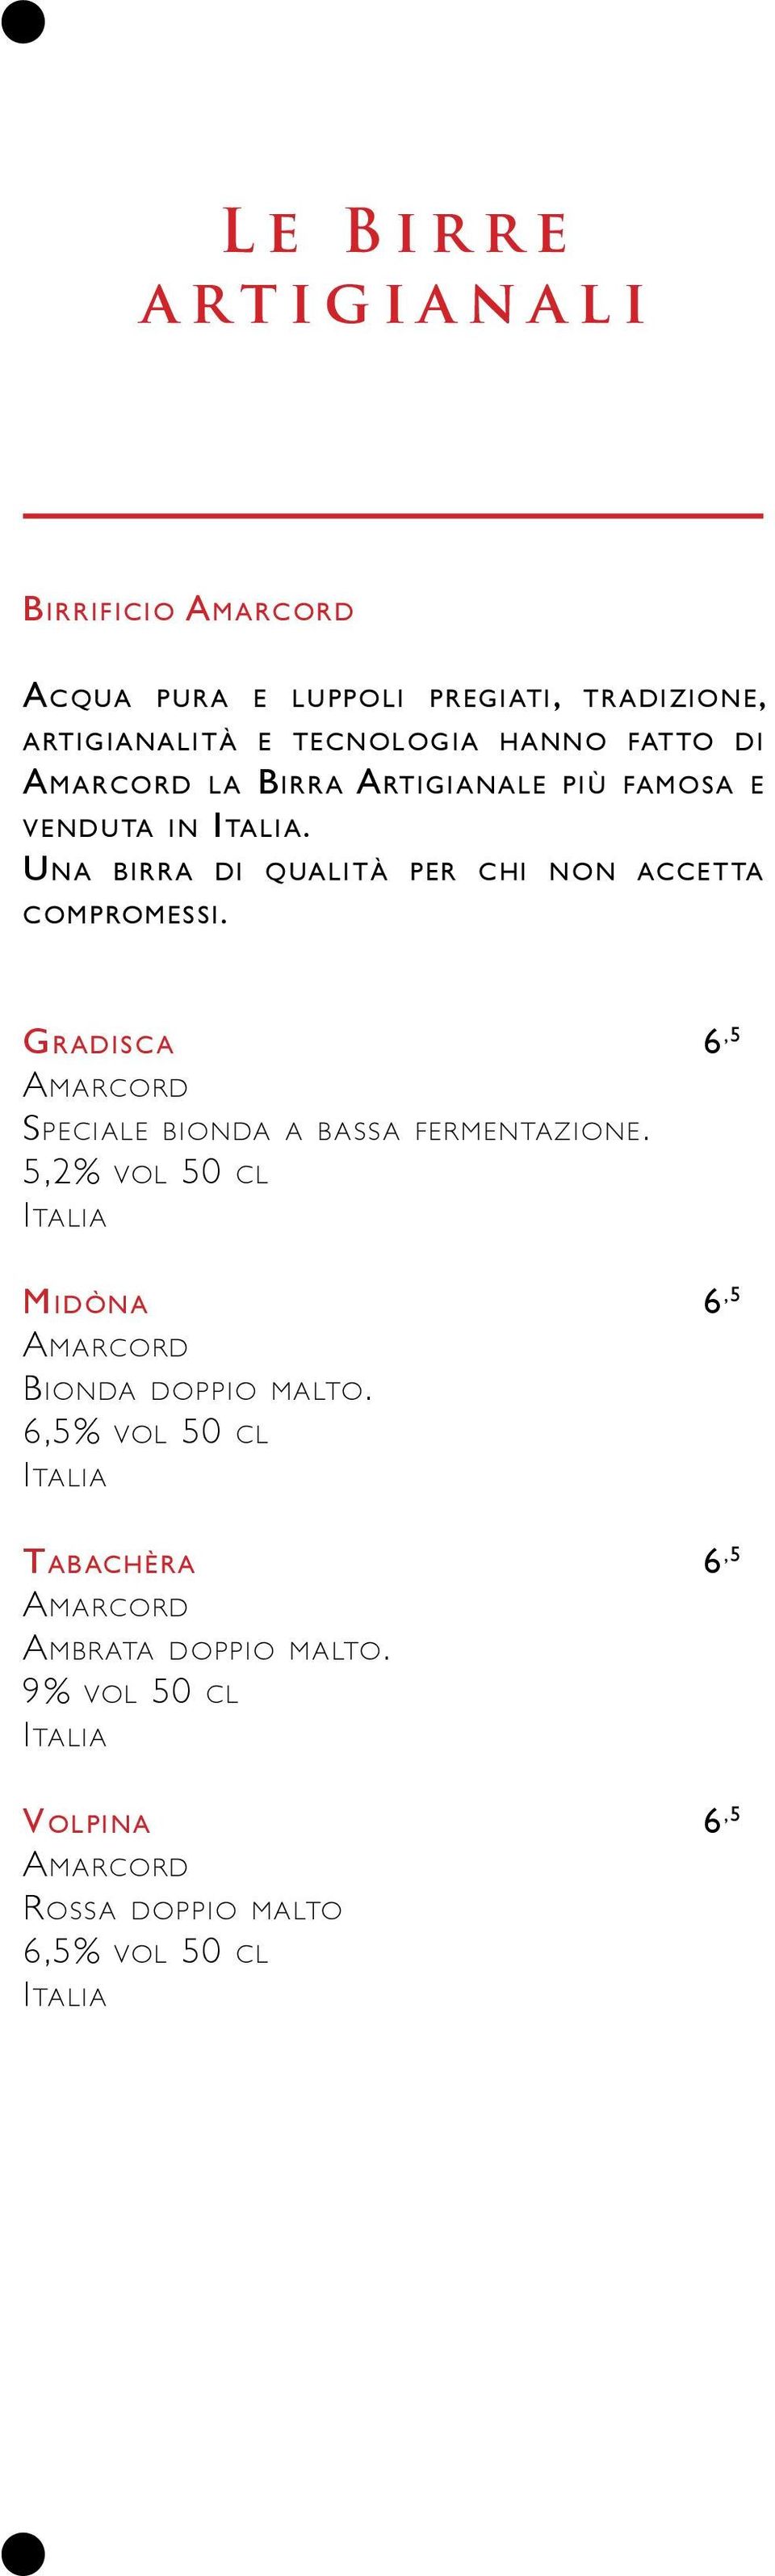 Gradisc a 6,5 Amarcord Speciale bionda a b assa fermentazione. 5,2% vol 50 cl Midòna 6,5 Amarcord Bionda doppio malto.